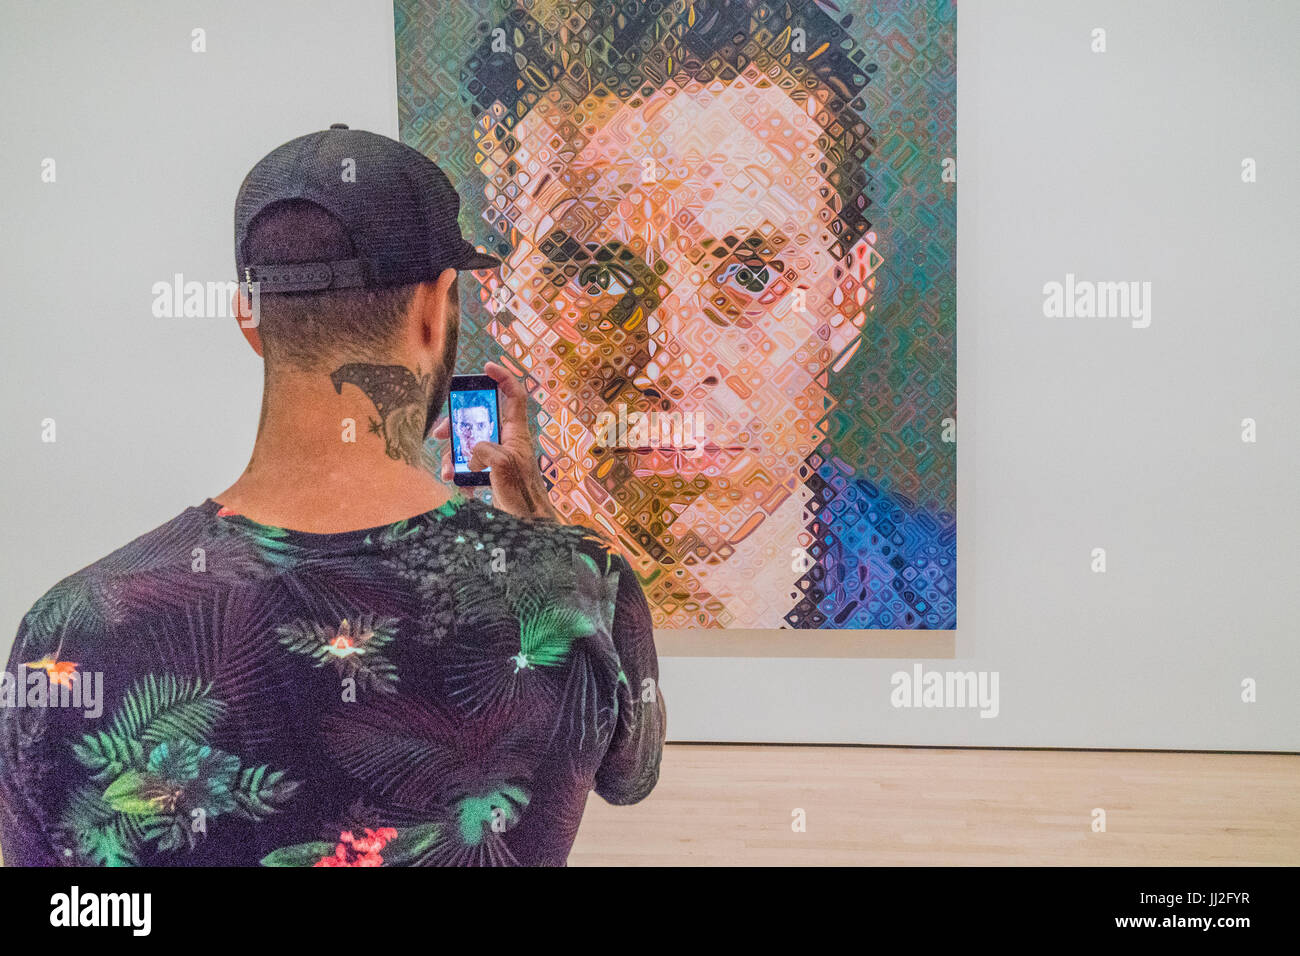 Junge männliche Erwachsene nutzt mit einem Hals Tattoo sein Handy, um ein großes Gemälde des Künstlers Chuck Close in einem Kunstmuseum zu fotografieren. Das Bild der th Stockfoto